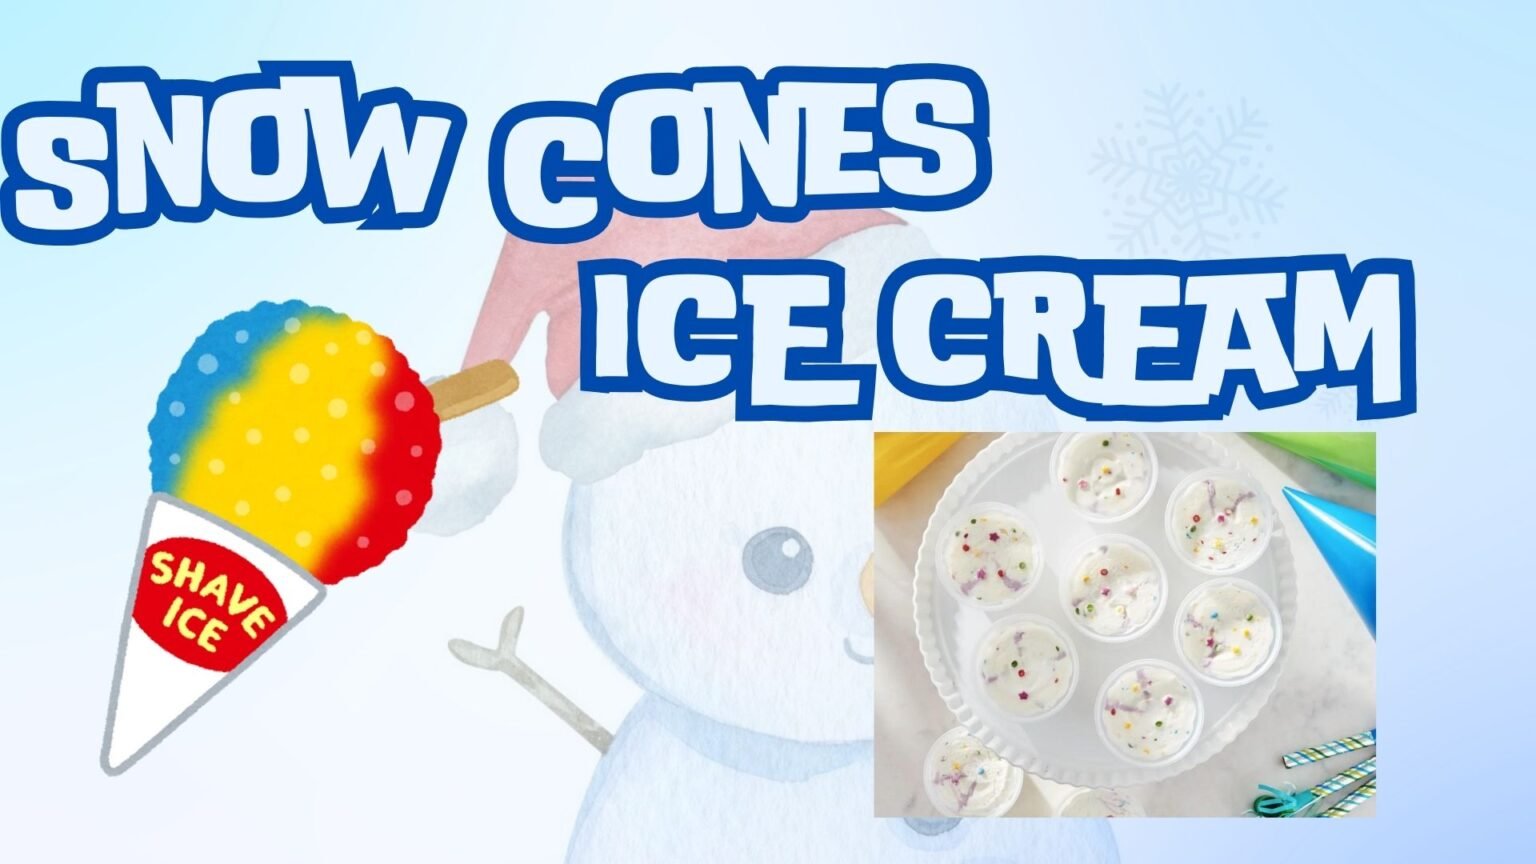 Snow cone, Ice cream